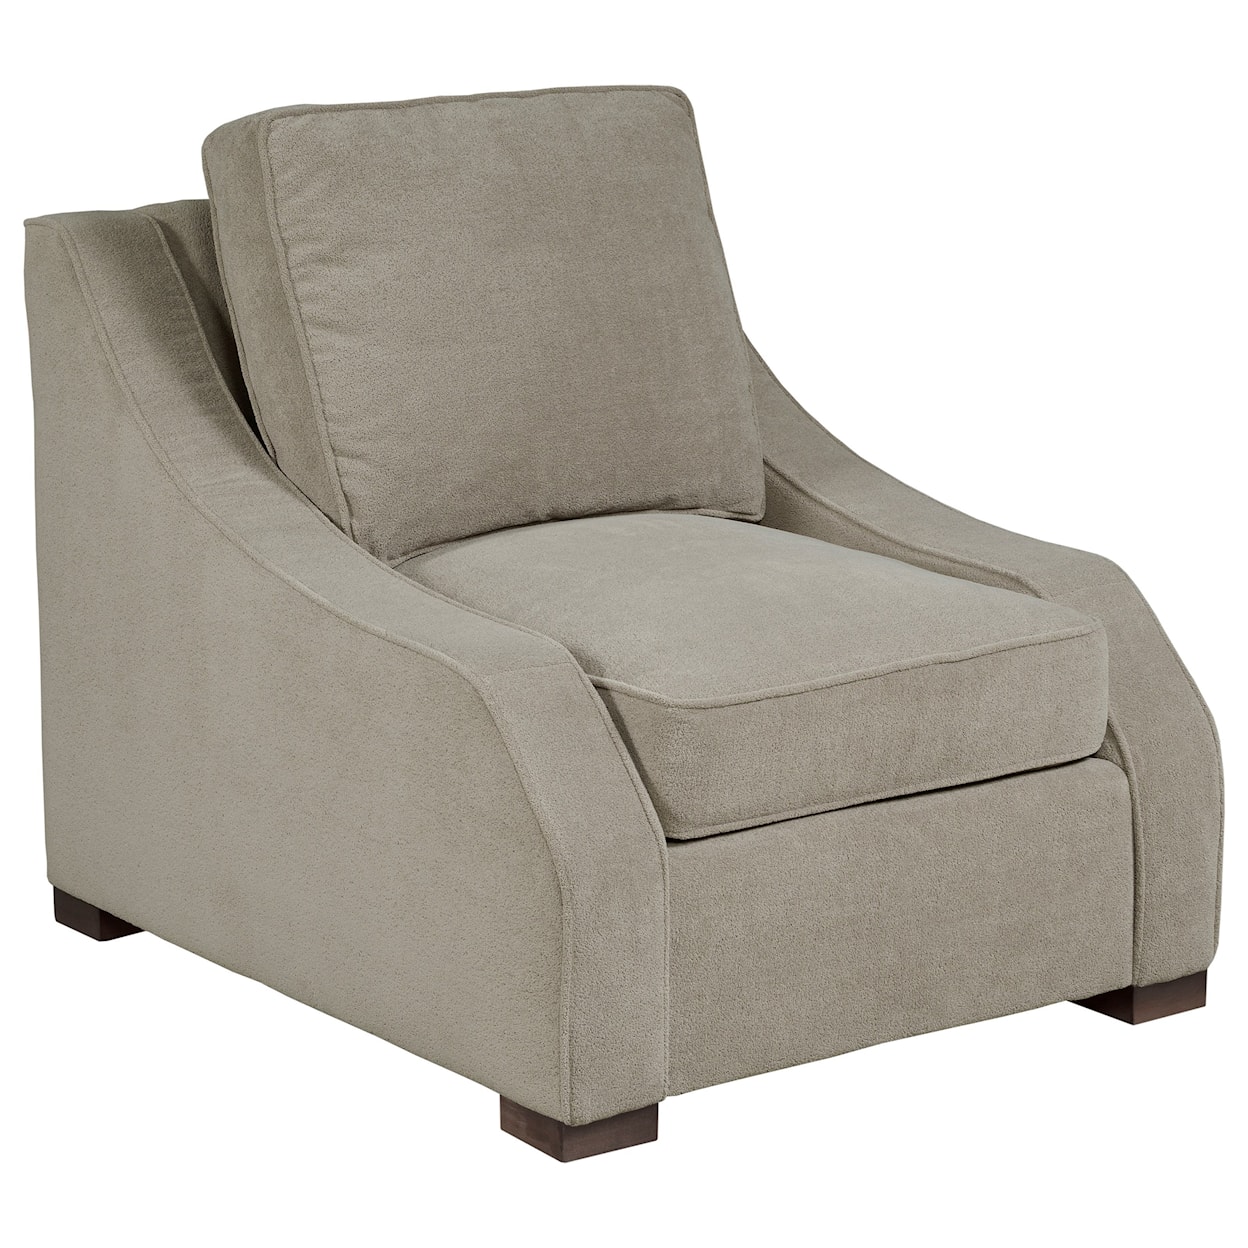 Kincaid Furniture Monarch Chair